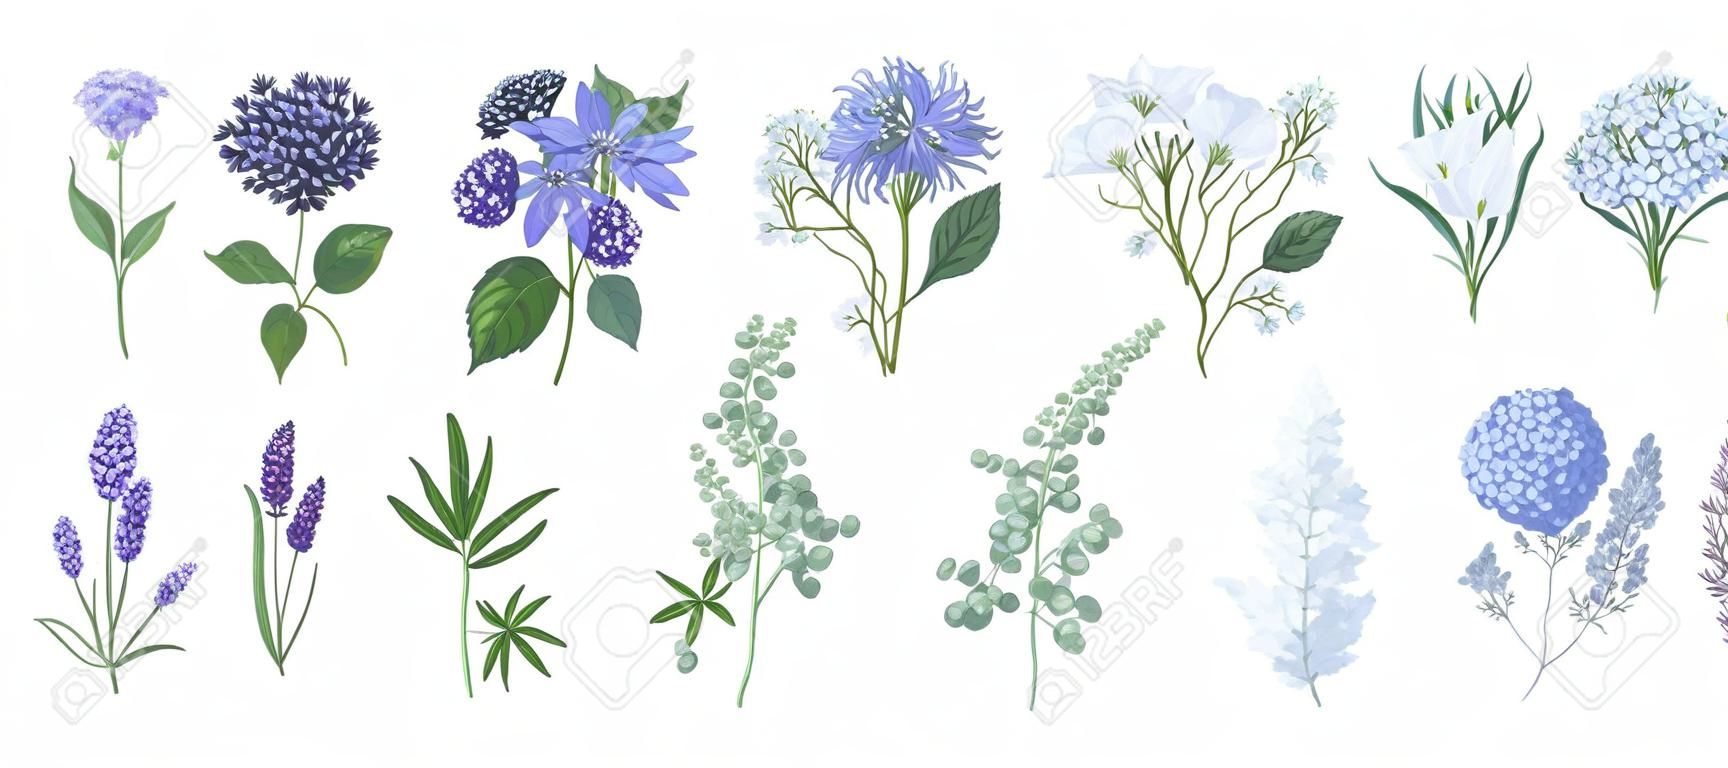 Bundel van gedetailleerde tekeningen van prachtige bloemachtige bloemen en decoratieve kruiden geïsoleerd op witte achtergrond. Set van prachtige bloemen en kruidendecoraties. Botanische hand getekend vector illustratie.